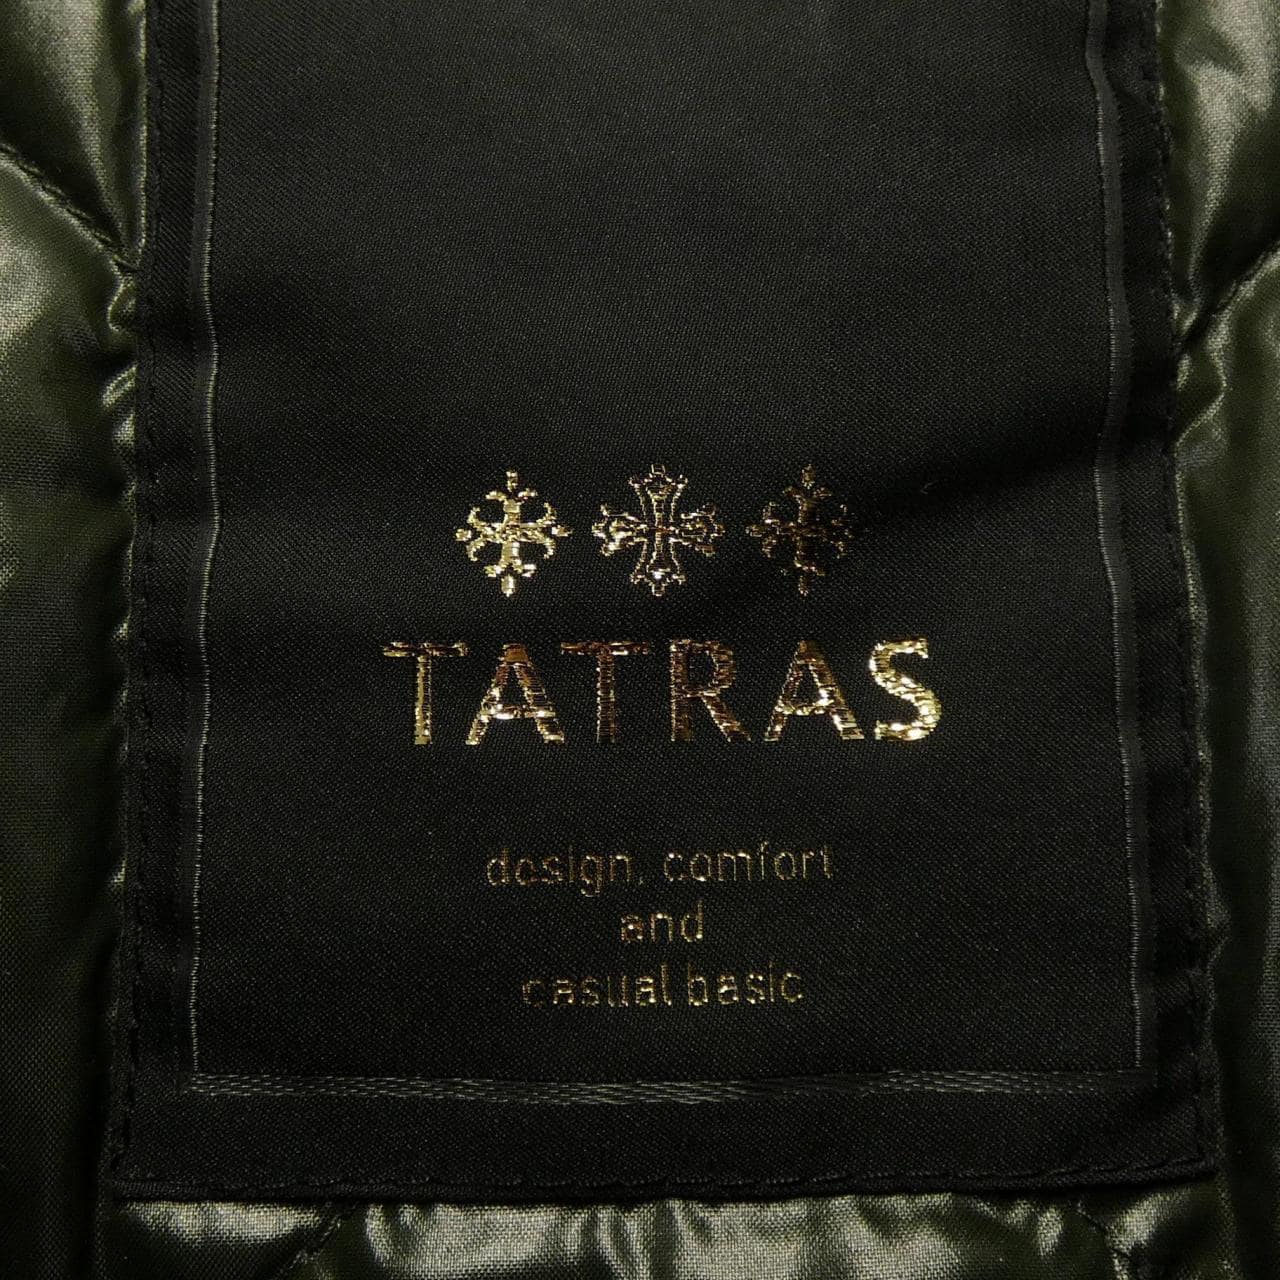 塔特拉斯TATRAS羽绒大衣